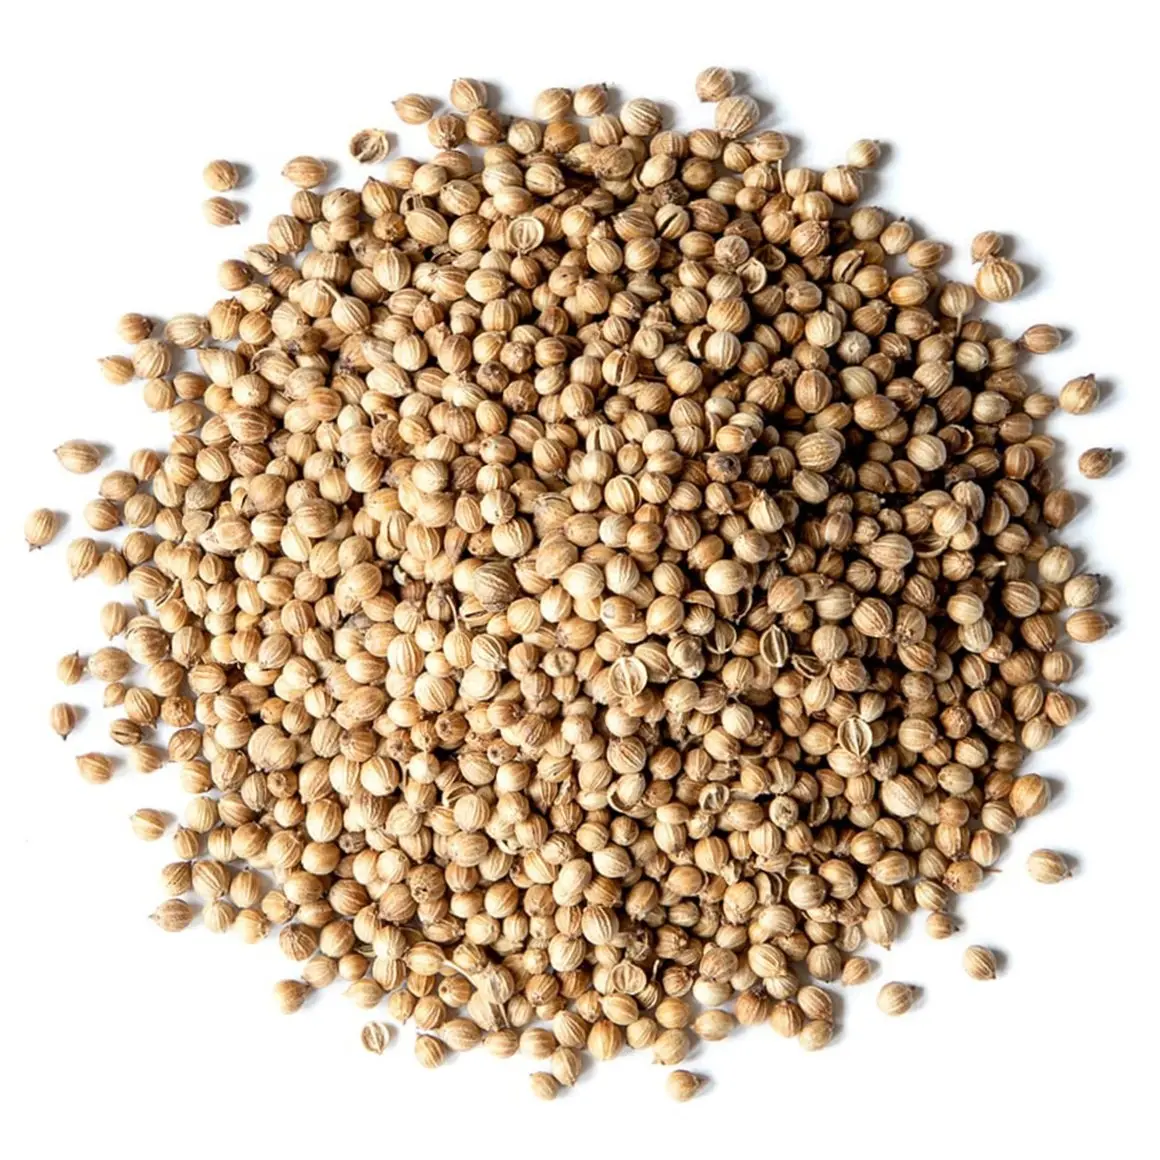 天然有機コリアンダー種子卸売価格スパイスハーブ食品グレードコリアンダー種子を大量に輸出